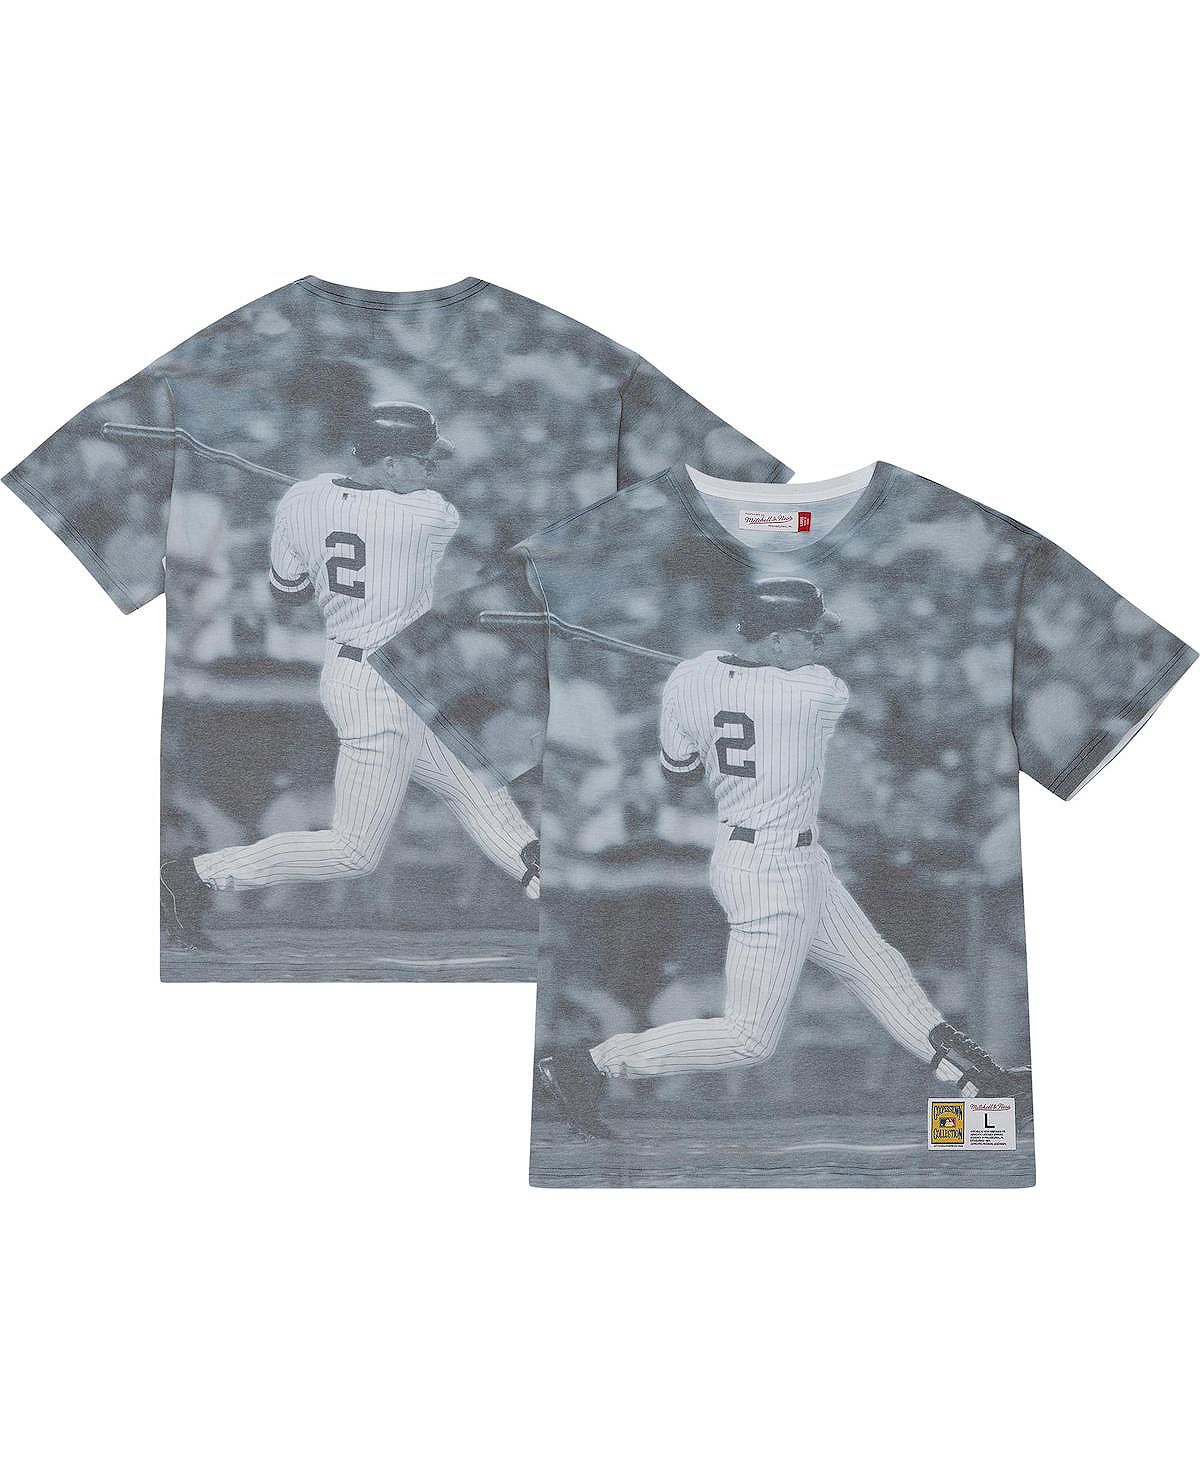 Мужская футболка Derek Jeter New York Yankees Cooperstown Collection с сублимированным рисунком игрока Mitchell & Ness кюнскен дерек квантовый волшебник